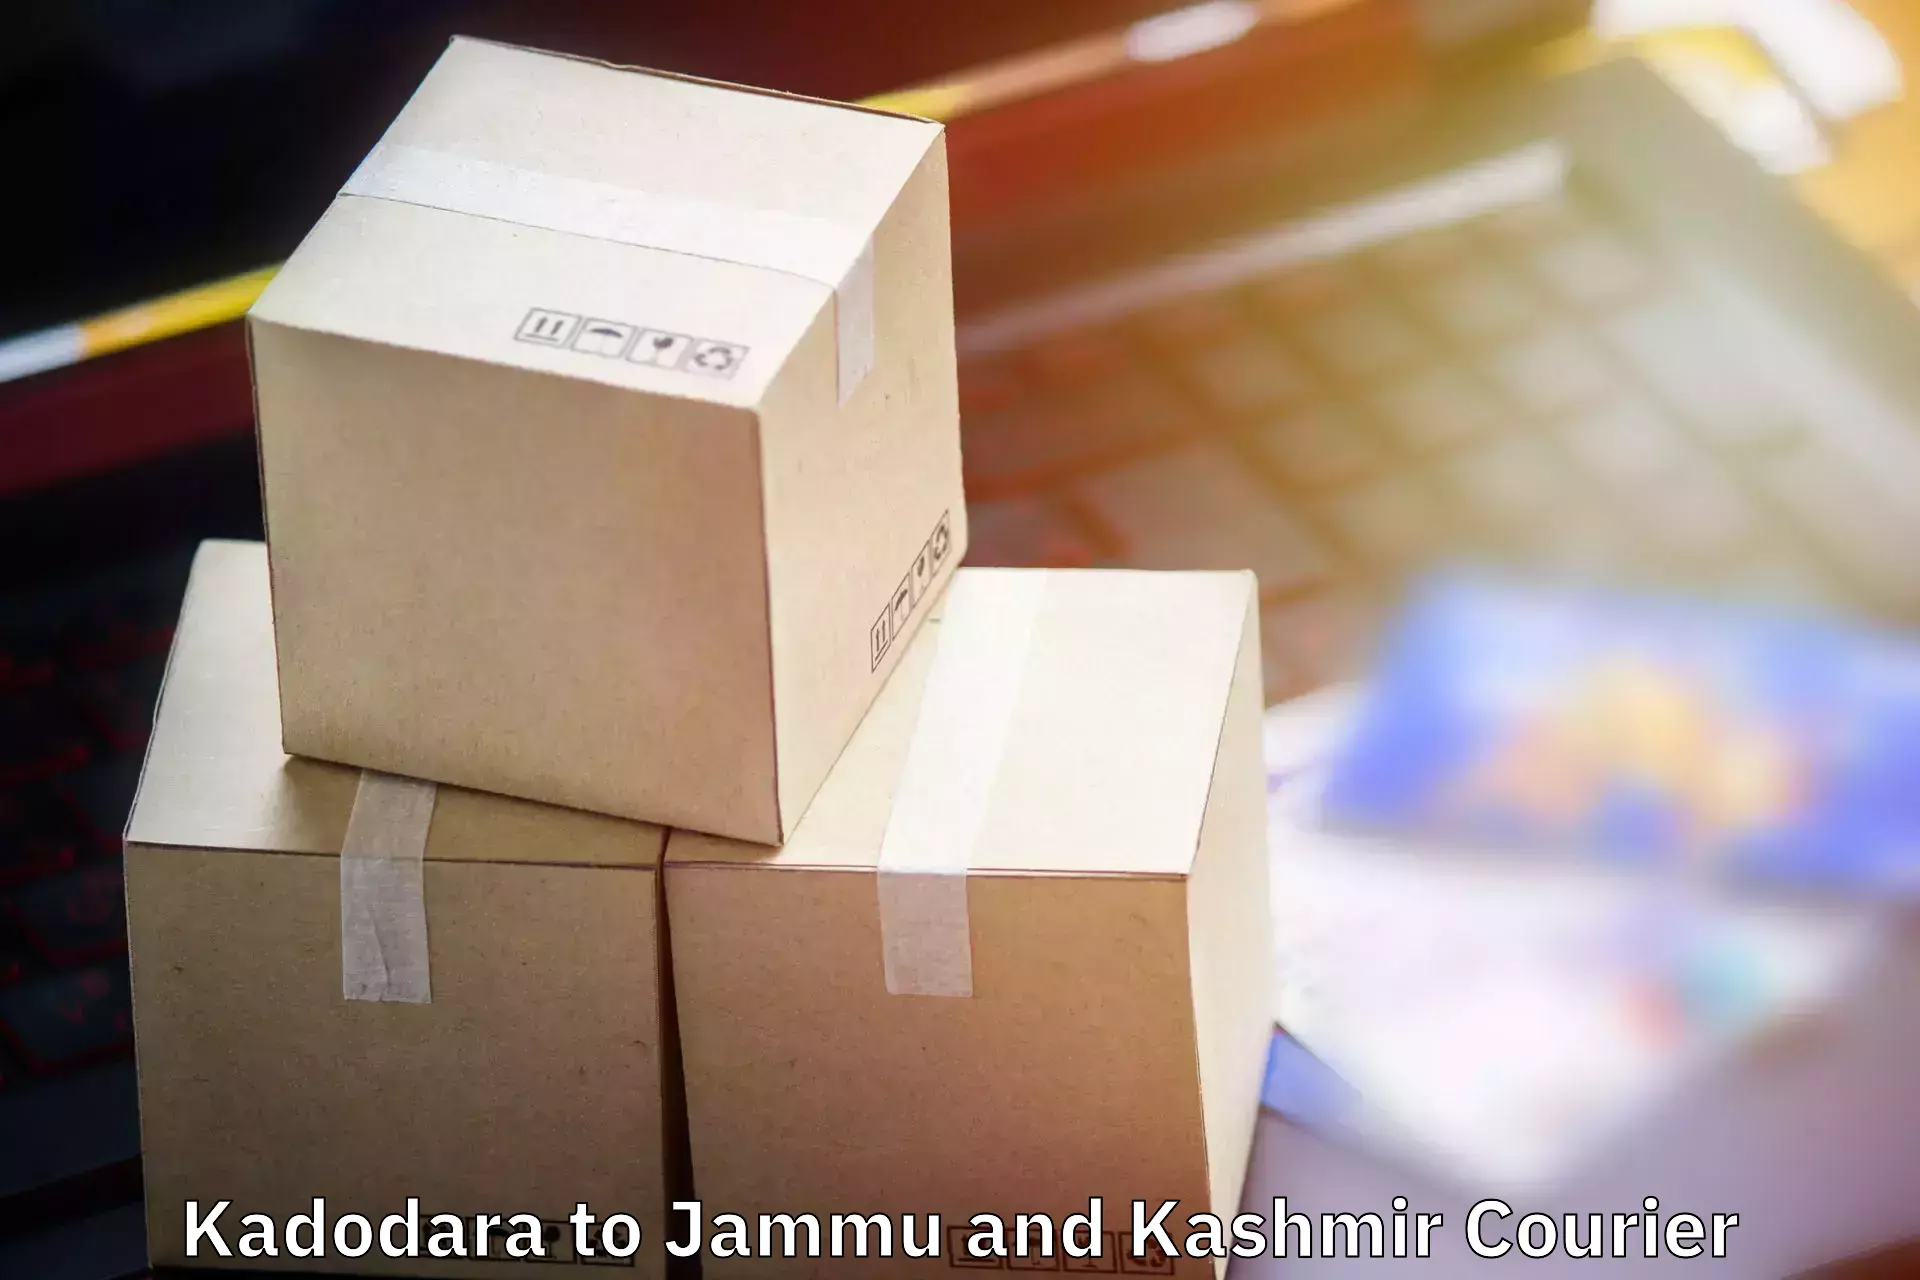 Baggage transport technology Kadodara to IIT Jammu